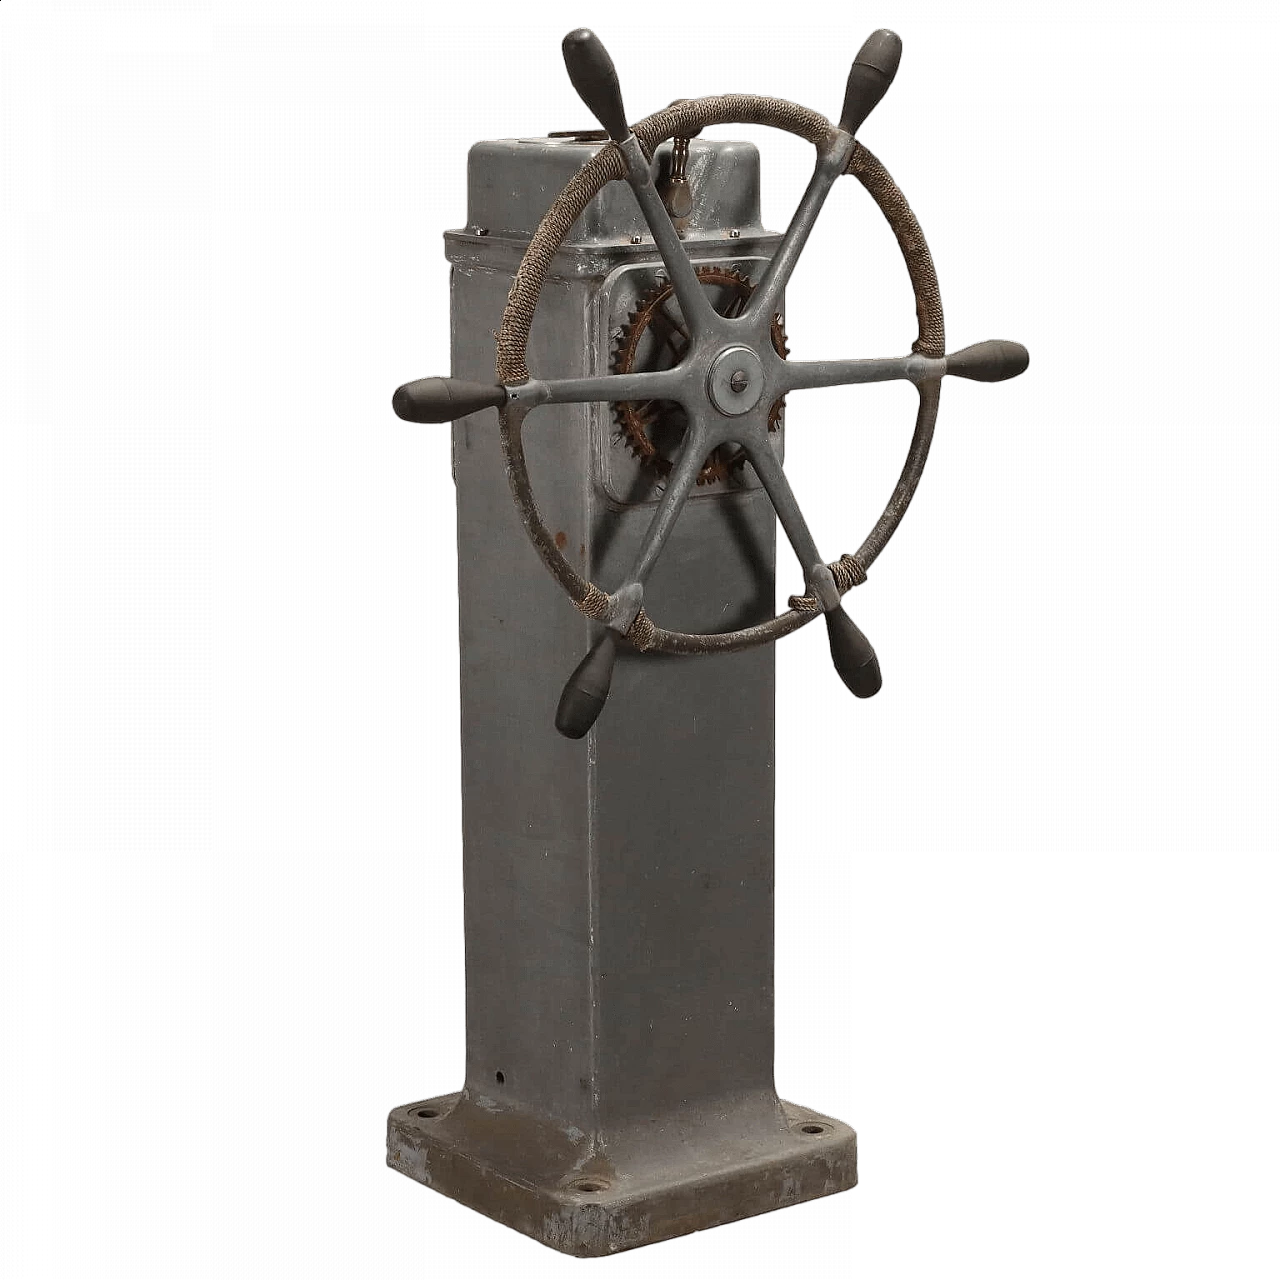 Sperry Gyroscope Company ship's wheel 11